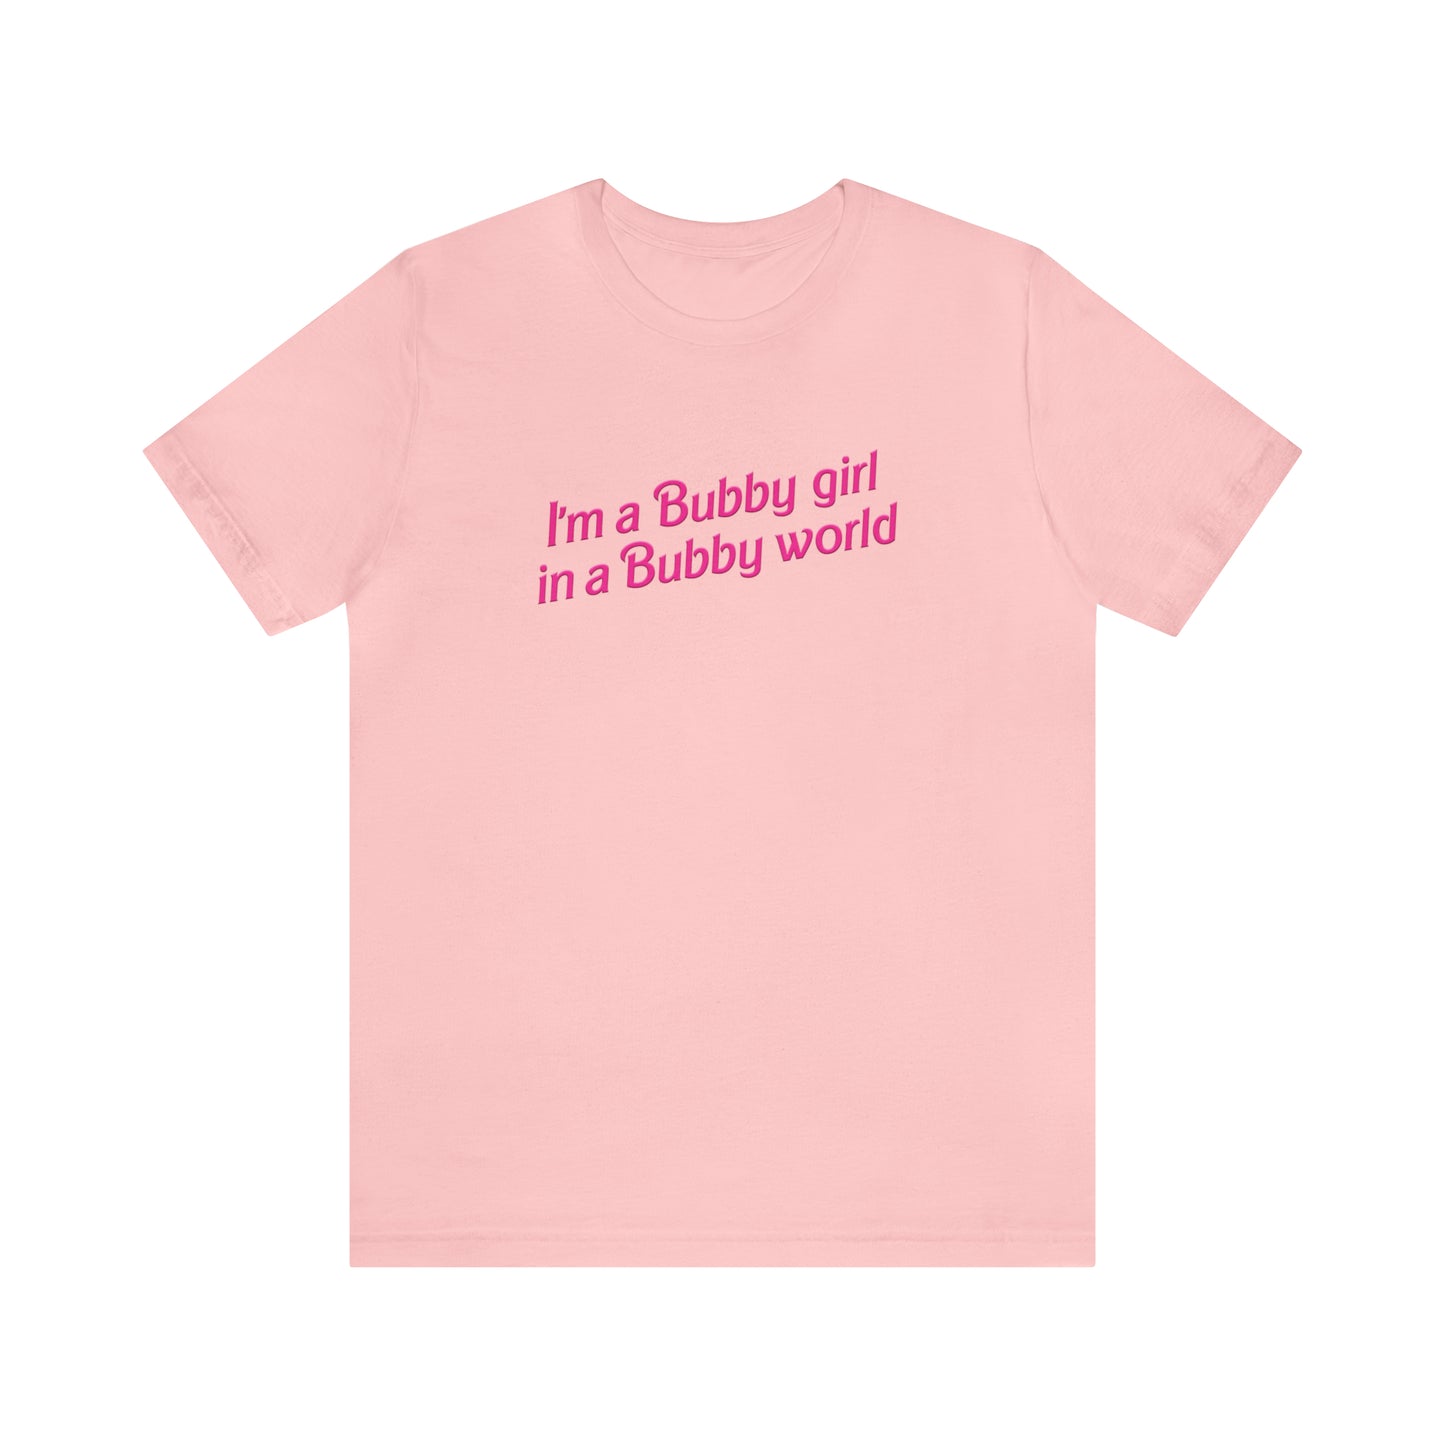 I'm A Bubby Girl Tee